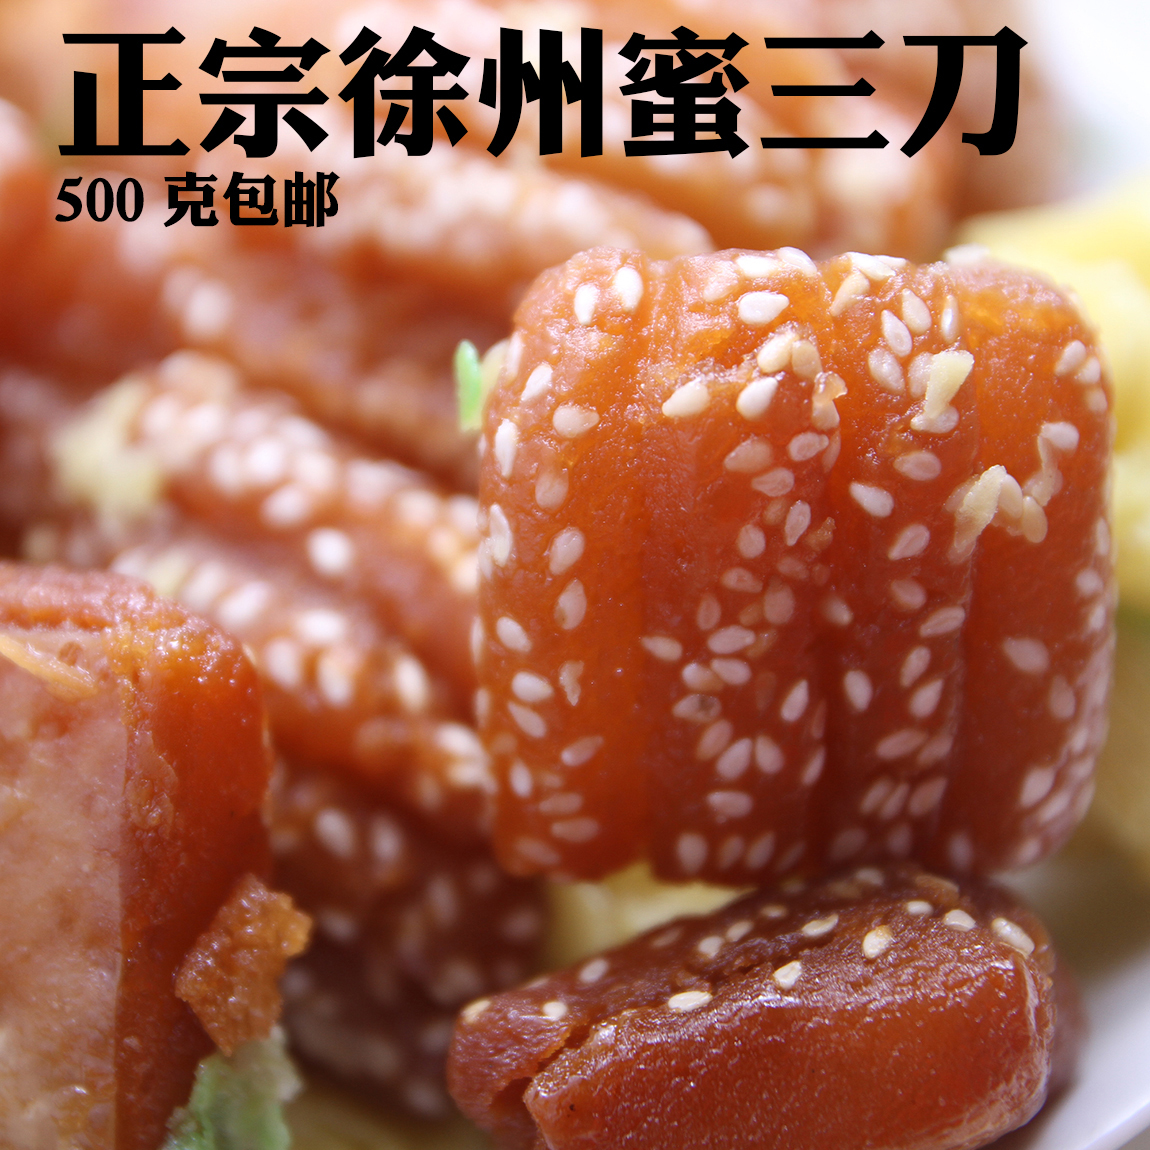 农家自制蜜三刀 三刀子 传统糕点 徐州特产美食 儿时怀旧点心零食